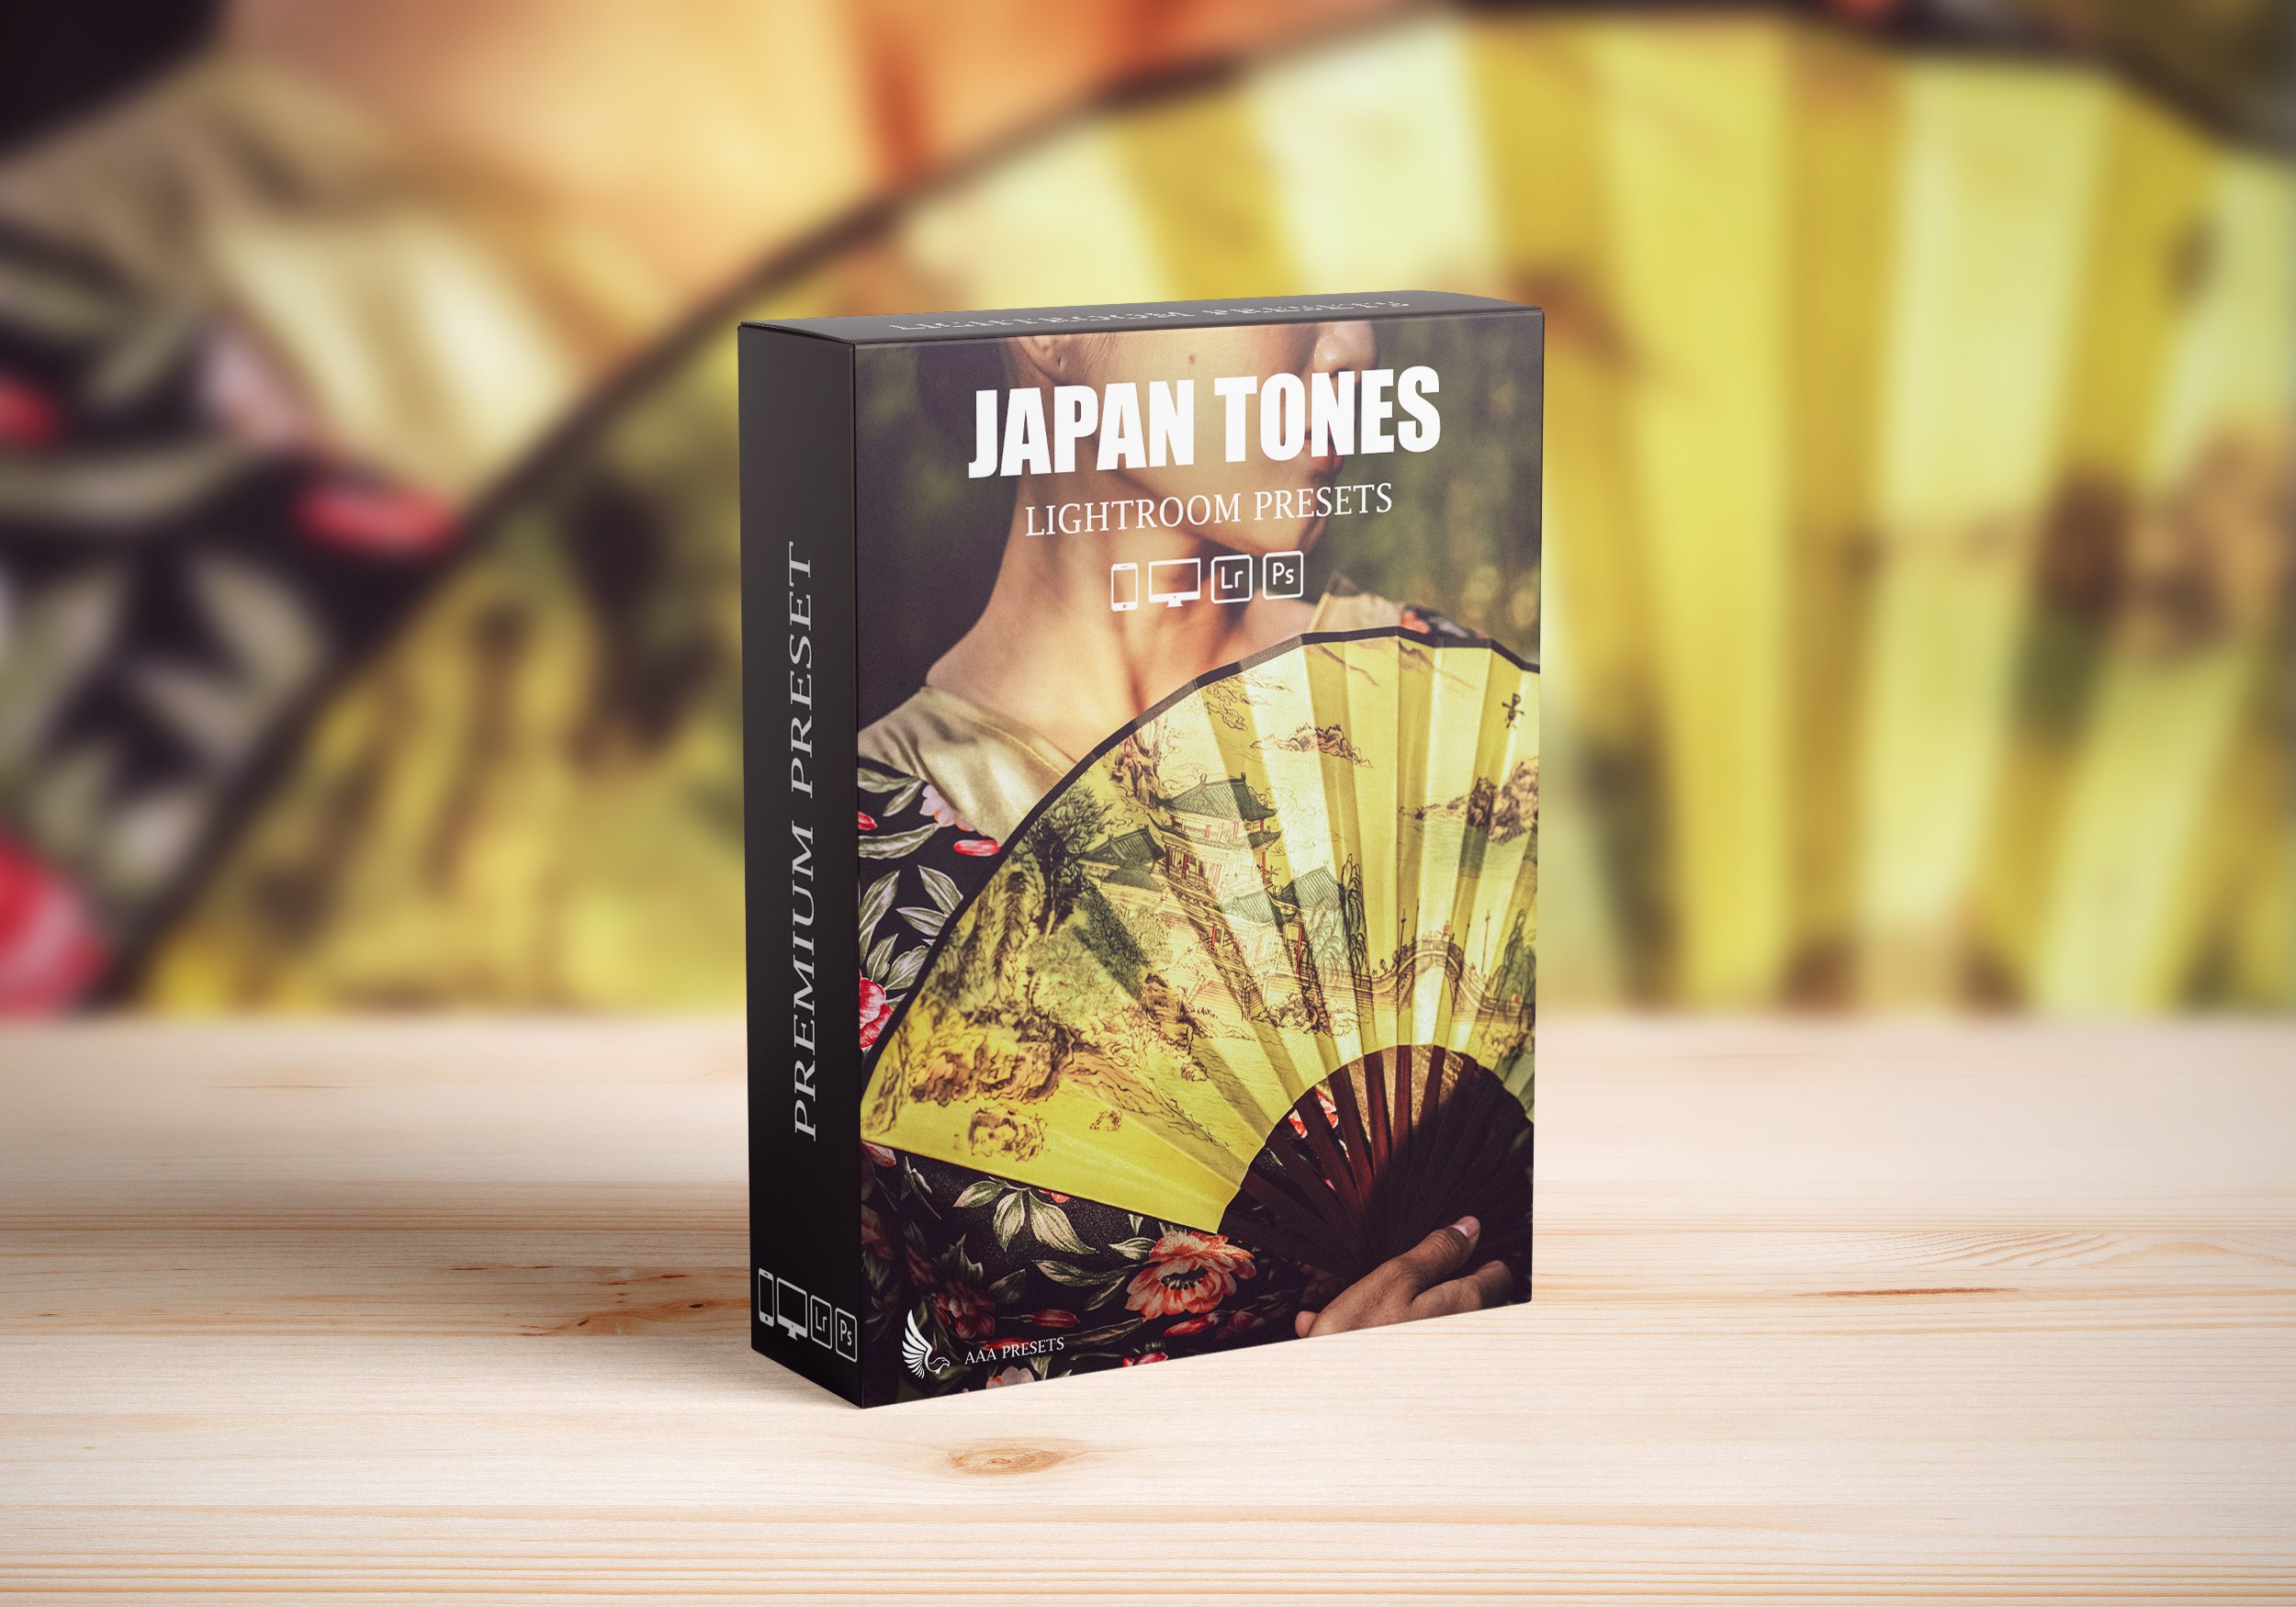 Japan Tones Lightroom Presetscover image.